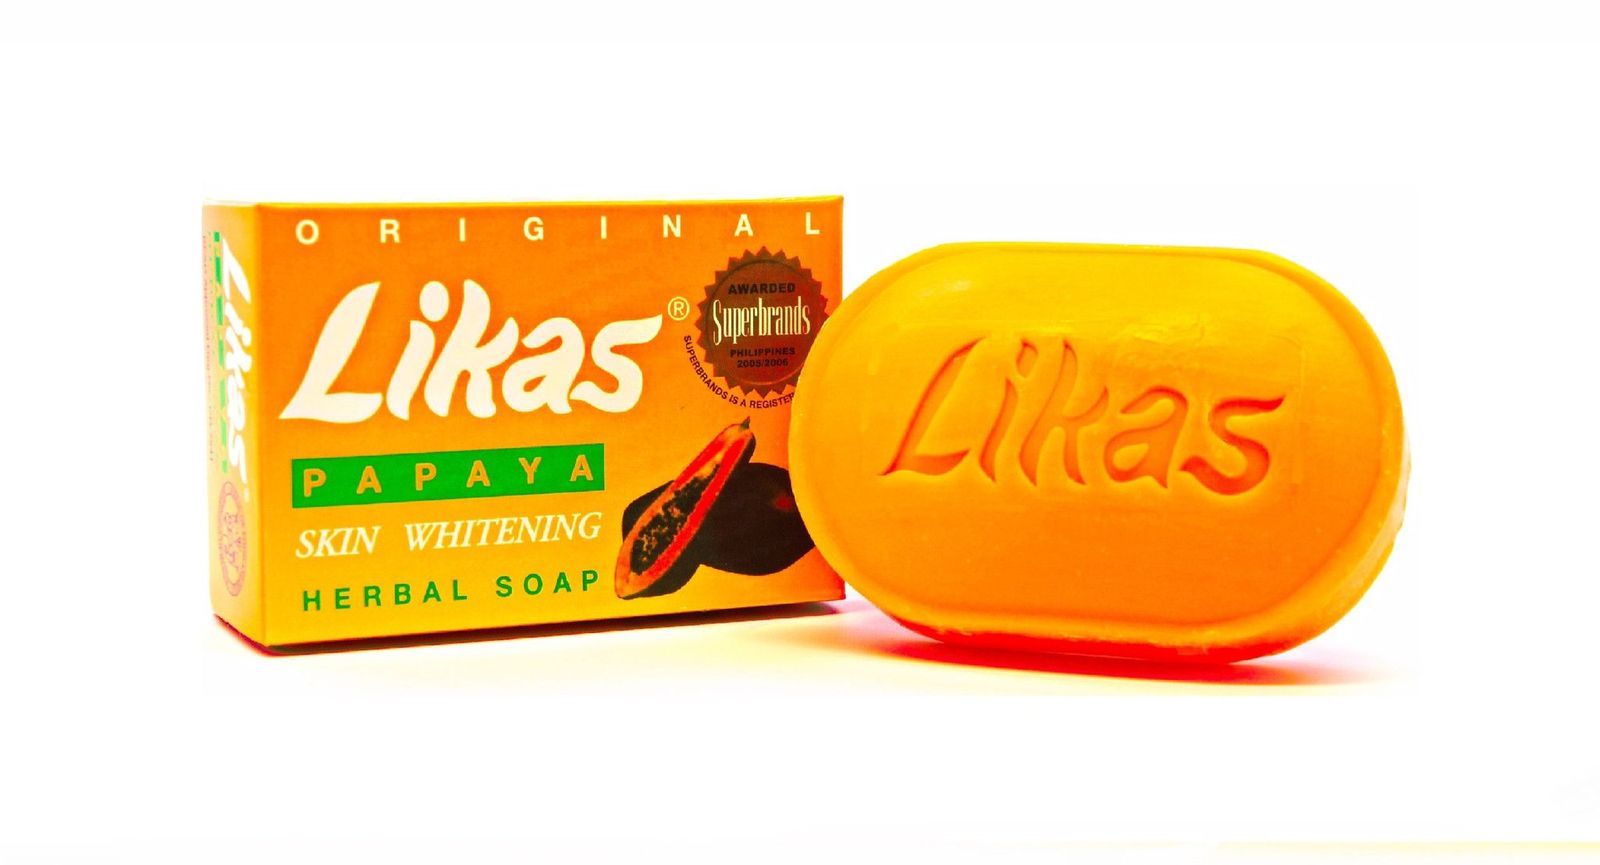 Likas Papaya Skin Whitening Herbal Soap 135 g